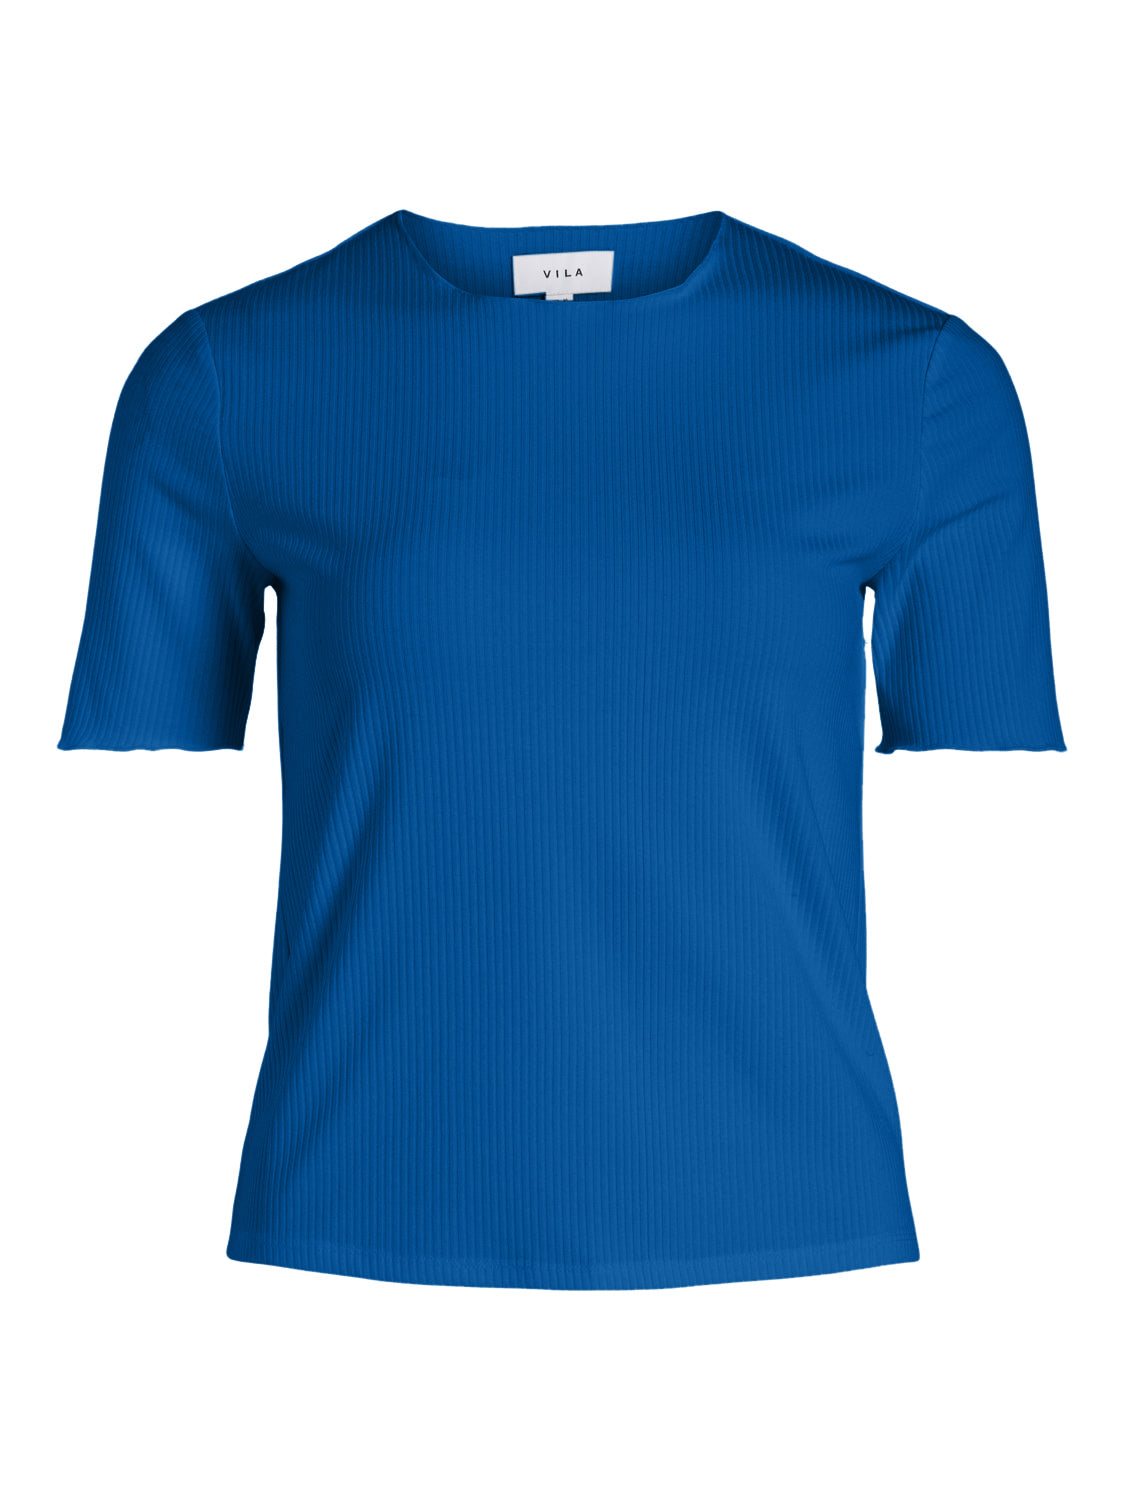 VILYNG T-Shirt - Lapis Blue